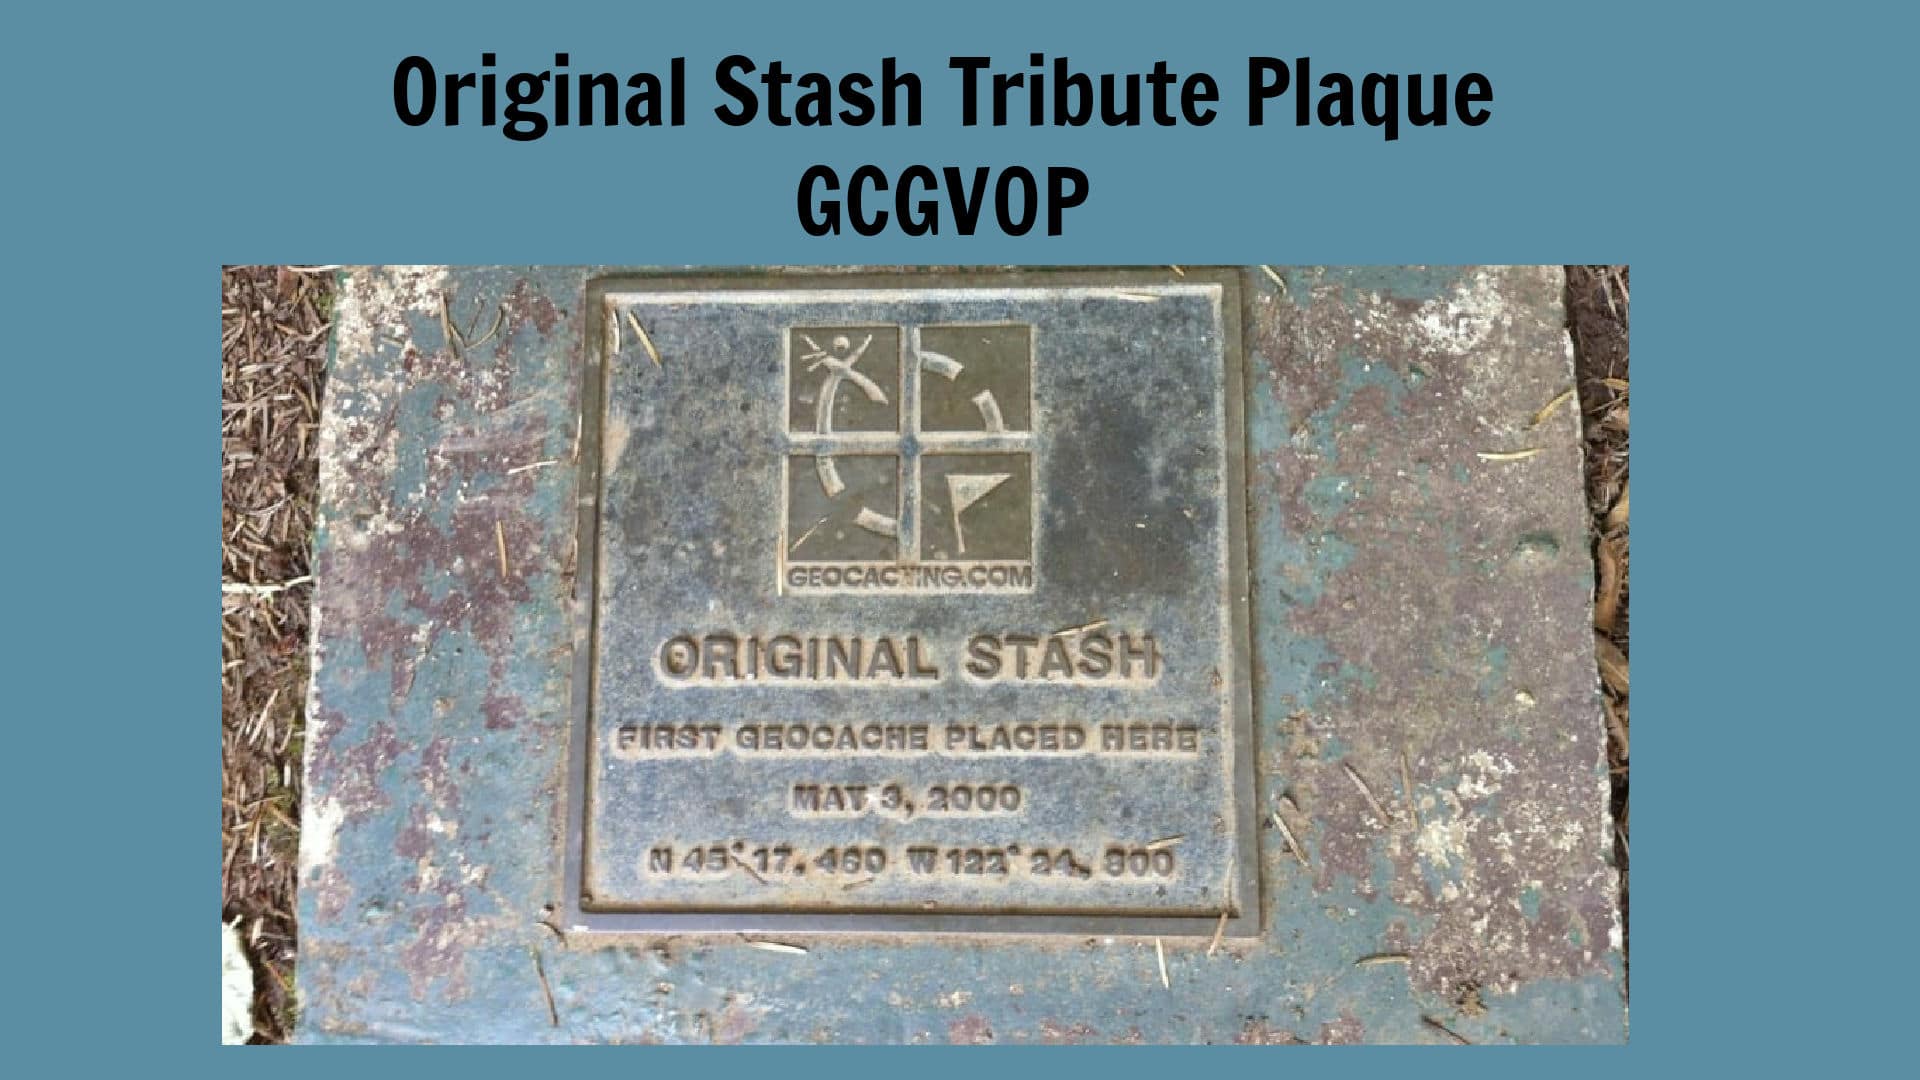 photo of Original Stash Tribute Plaque